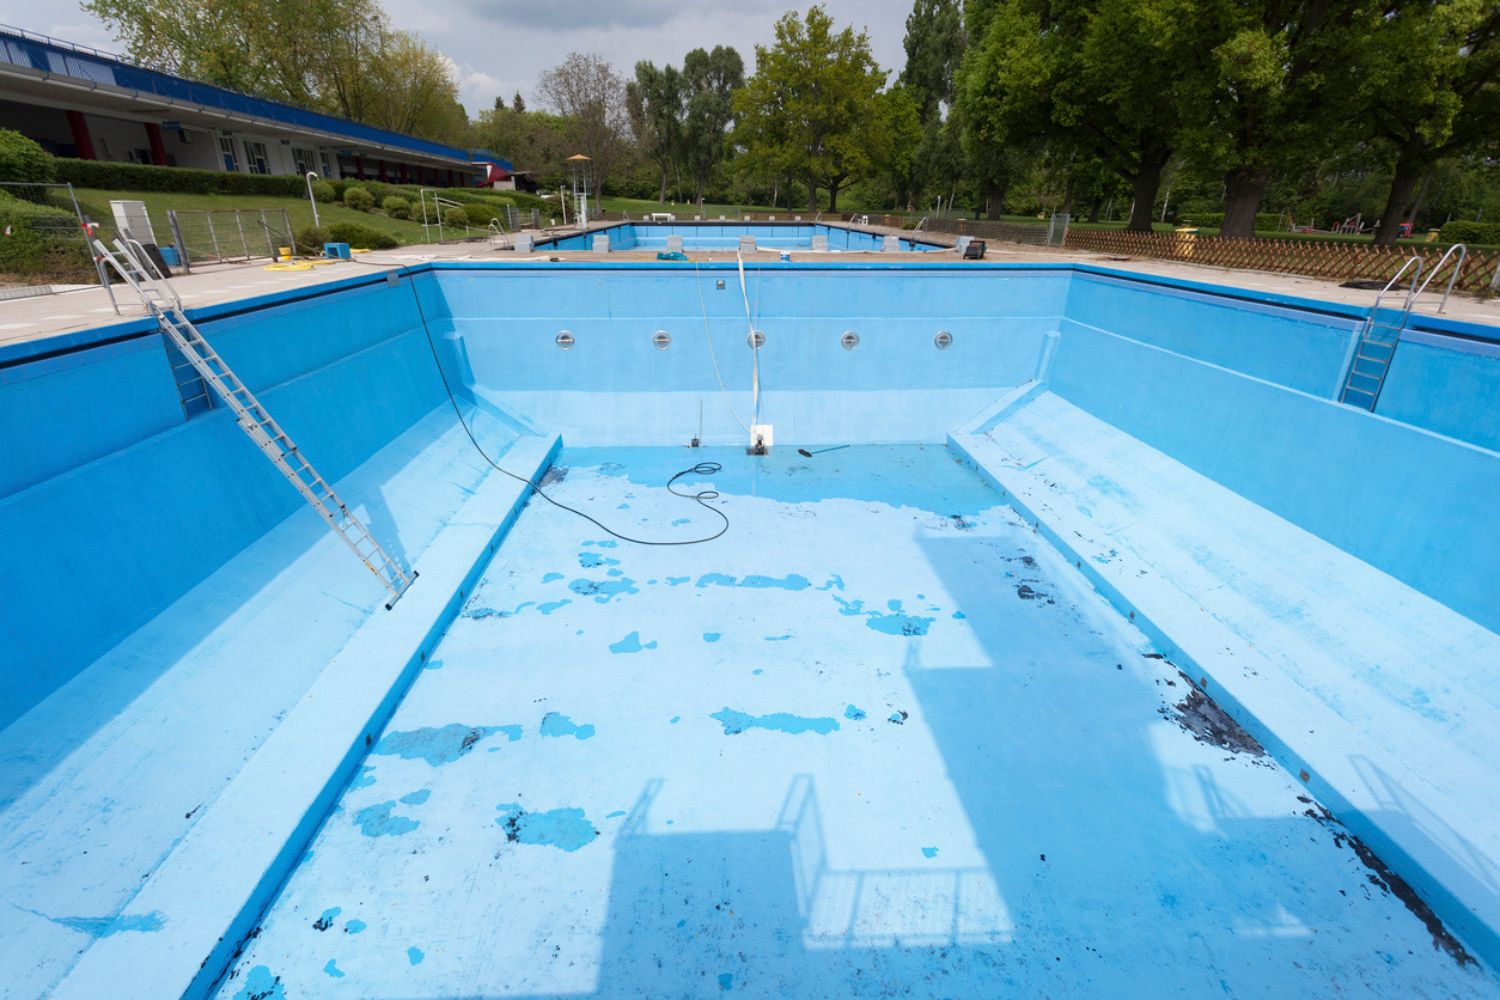 Pool Leak Repair Cost